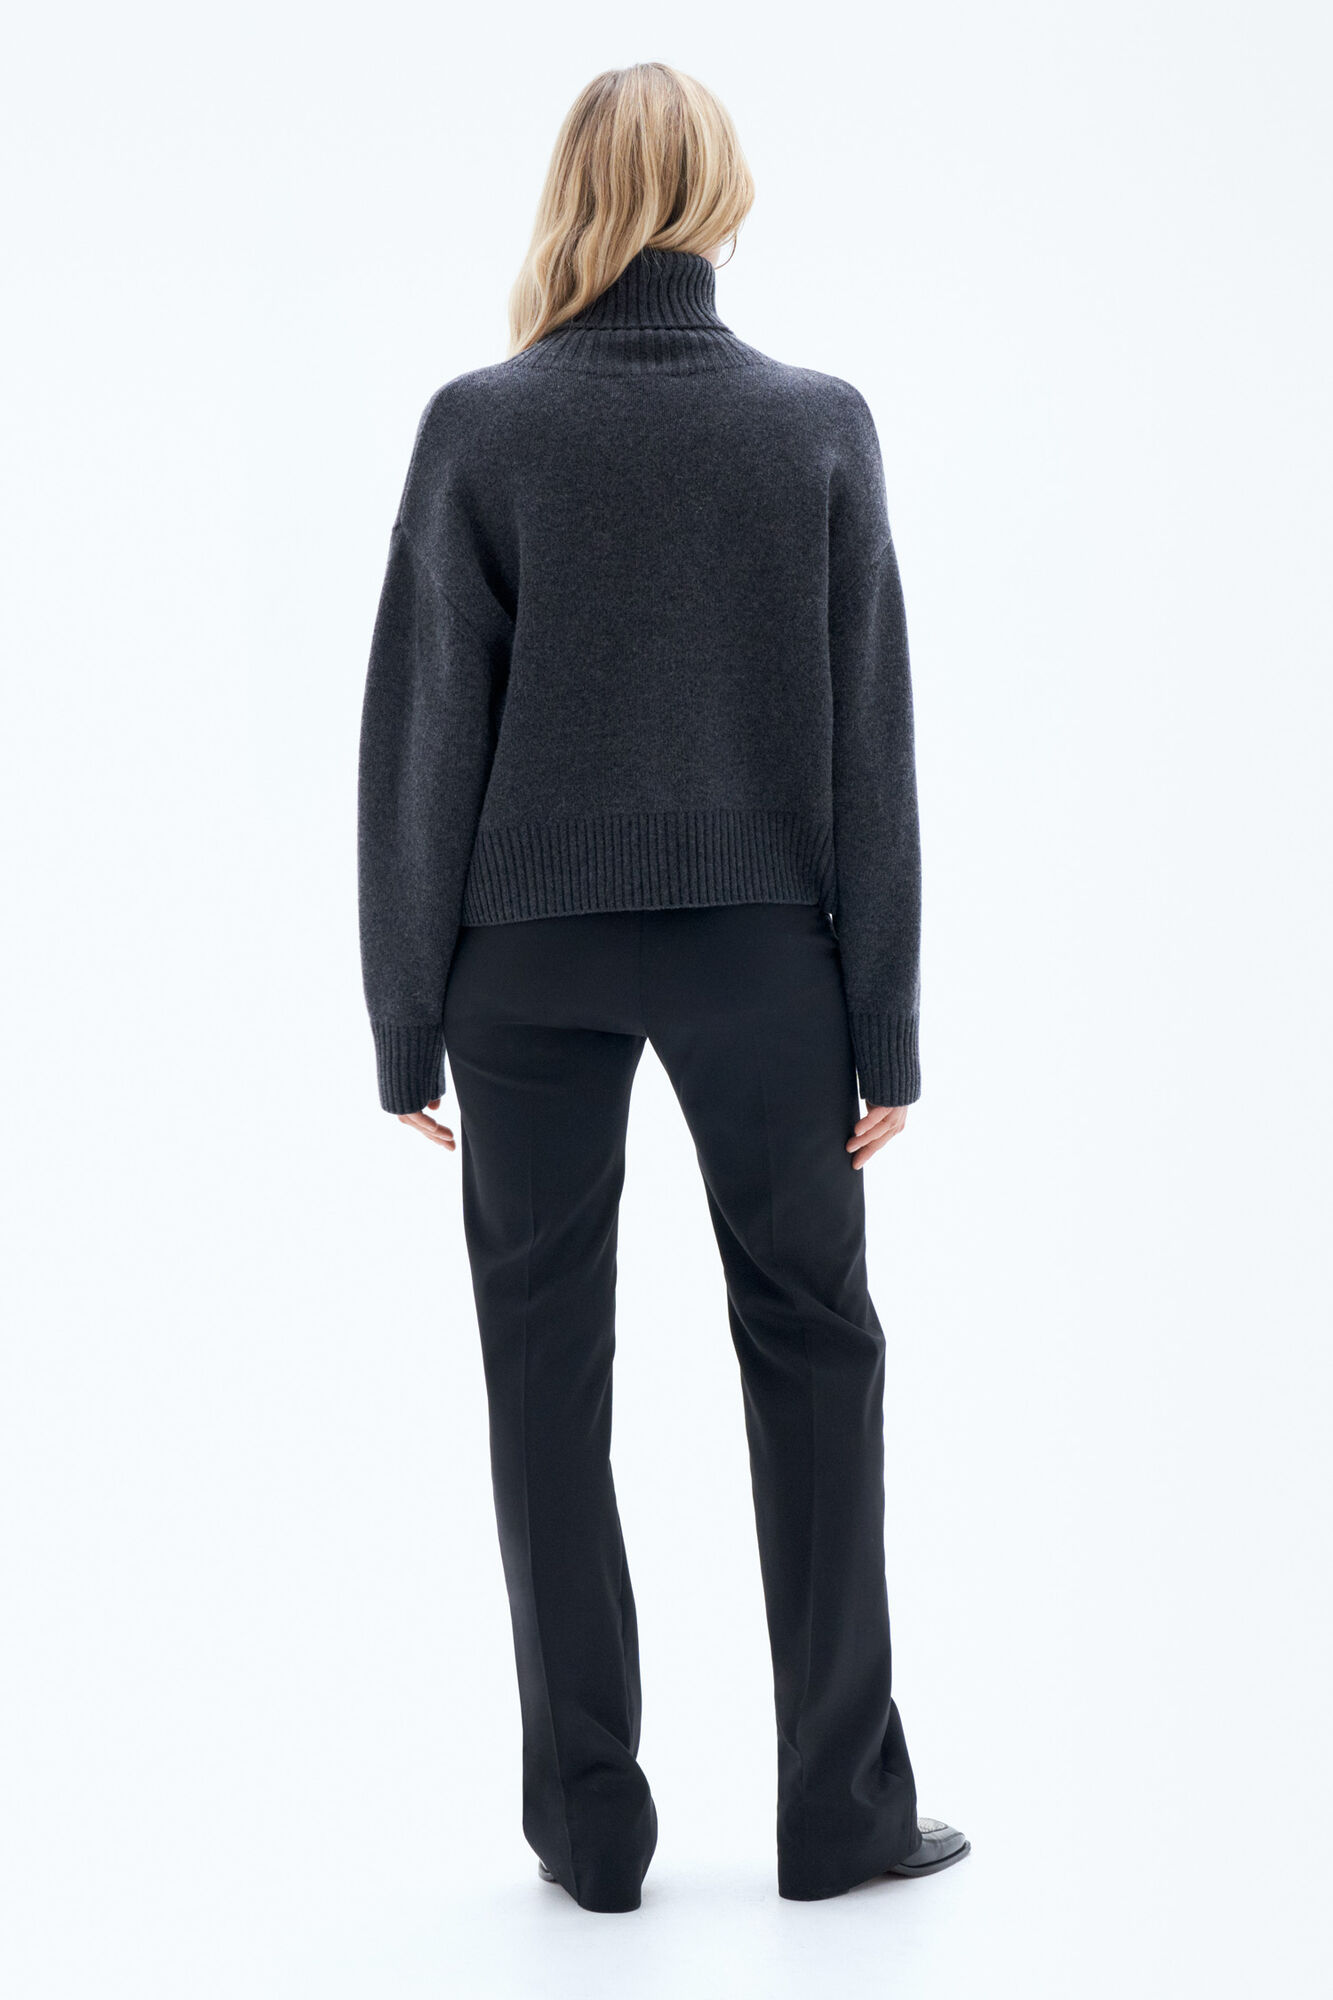 Ladies - Black Cashmere Turtleneck Sweater - Size: L - H&M